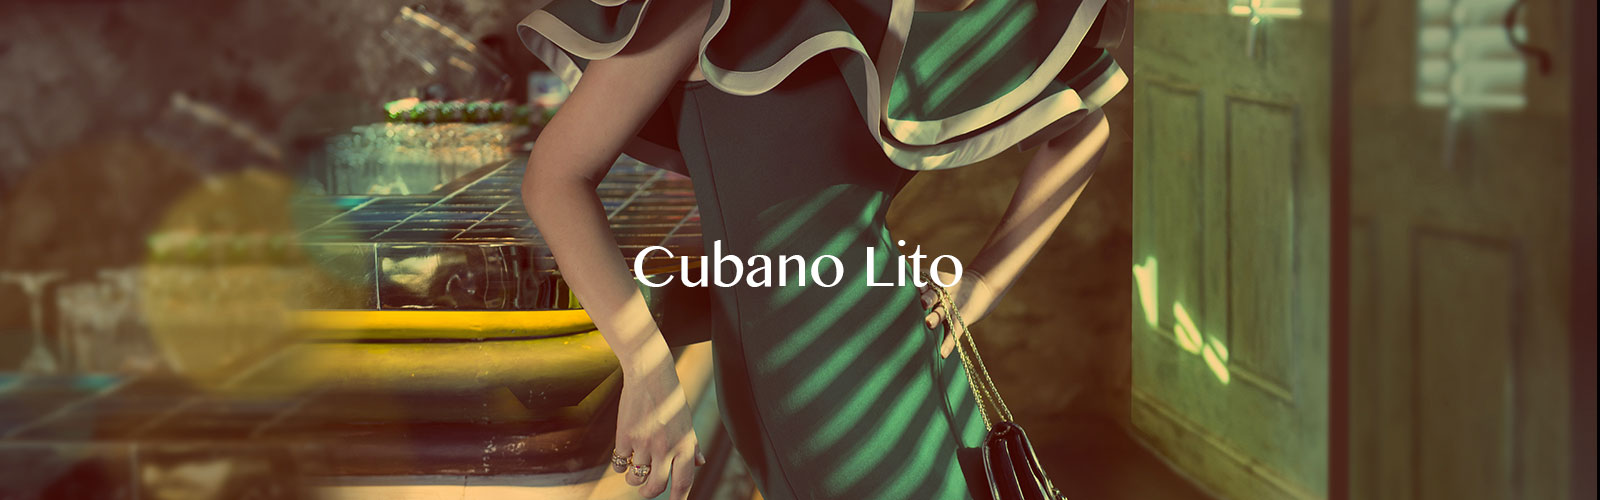 cubano-lito-header-with-text